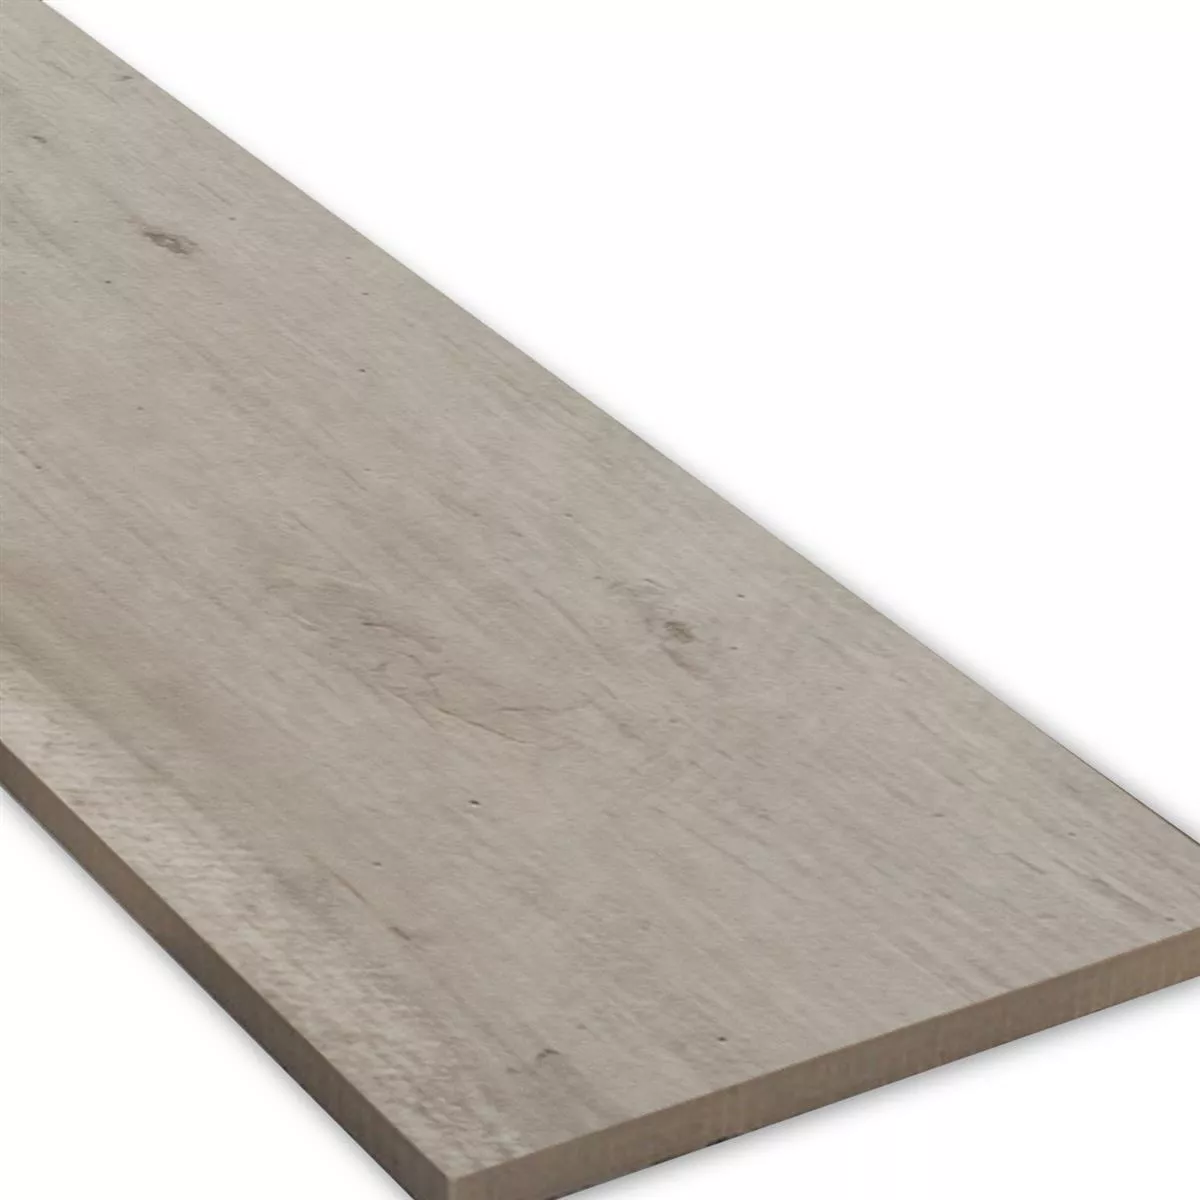 Sample Floor Tiles Wood Optic Emparrado White 30x120cm